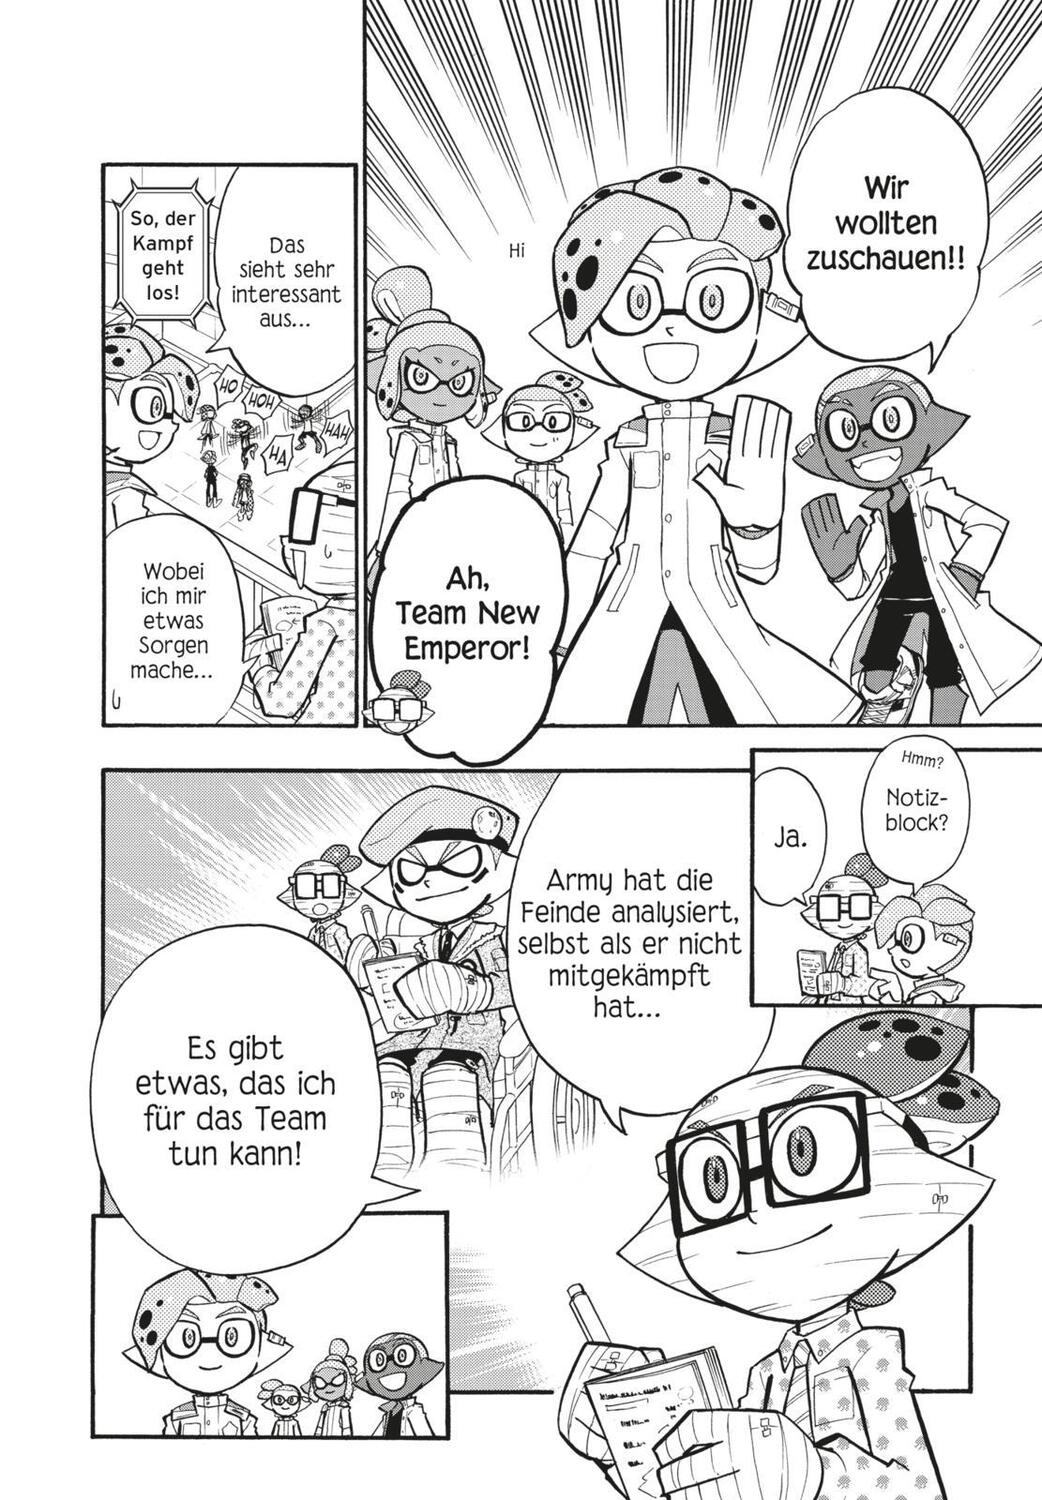 Bild: 9783551730299 | Splatoon 10 | Das Nintendo-Game als Manga! Ideal für Kinder und Gamer!